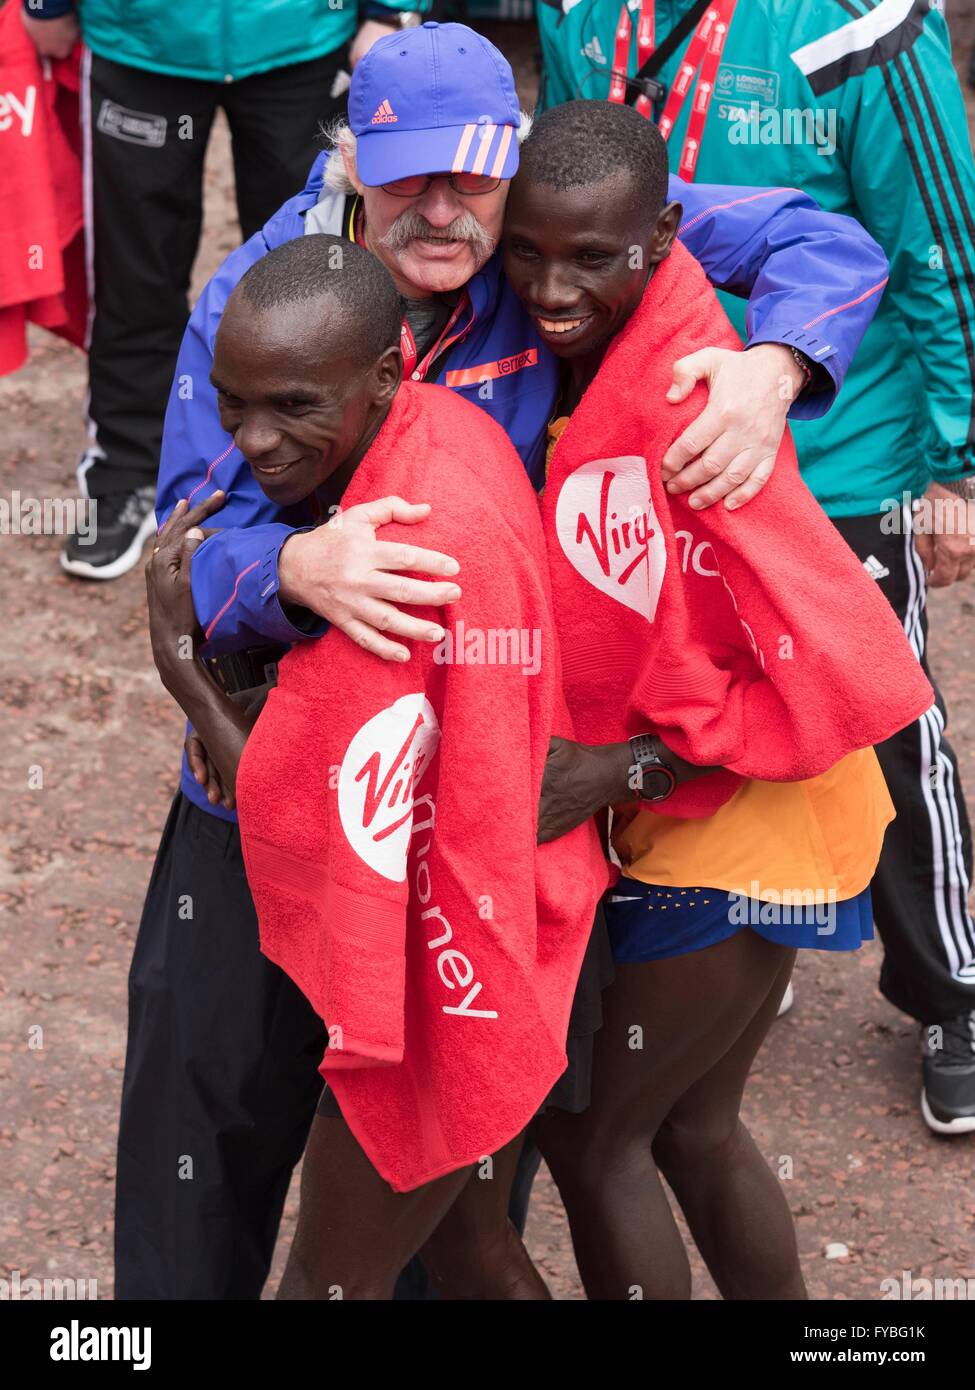 De gauche à droite, le Gagnant Eliud Kipchoge (Kenya) et Stanley Biwott (Kenya) sur la ligne d'arrivée du Marathon de Londres Londres 2016 Virgin Money. Londres 24/04/2016 Banque D'Images